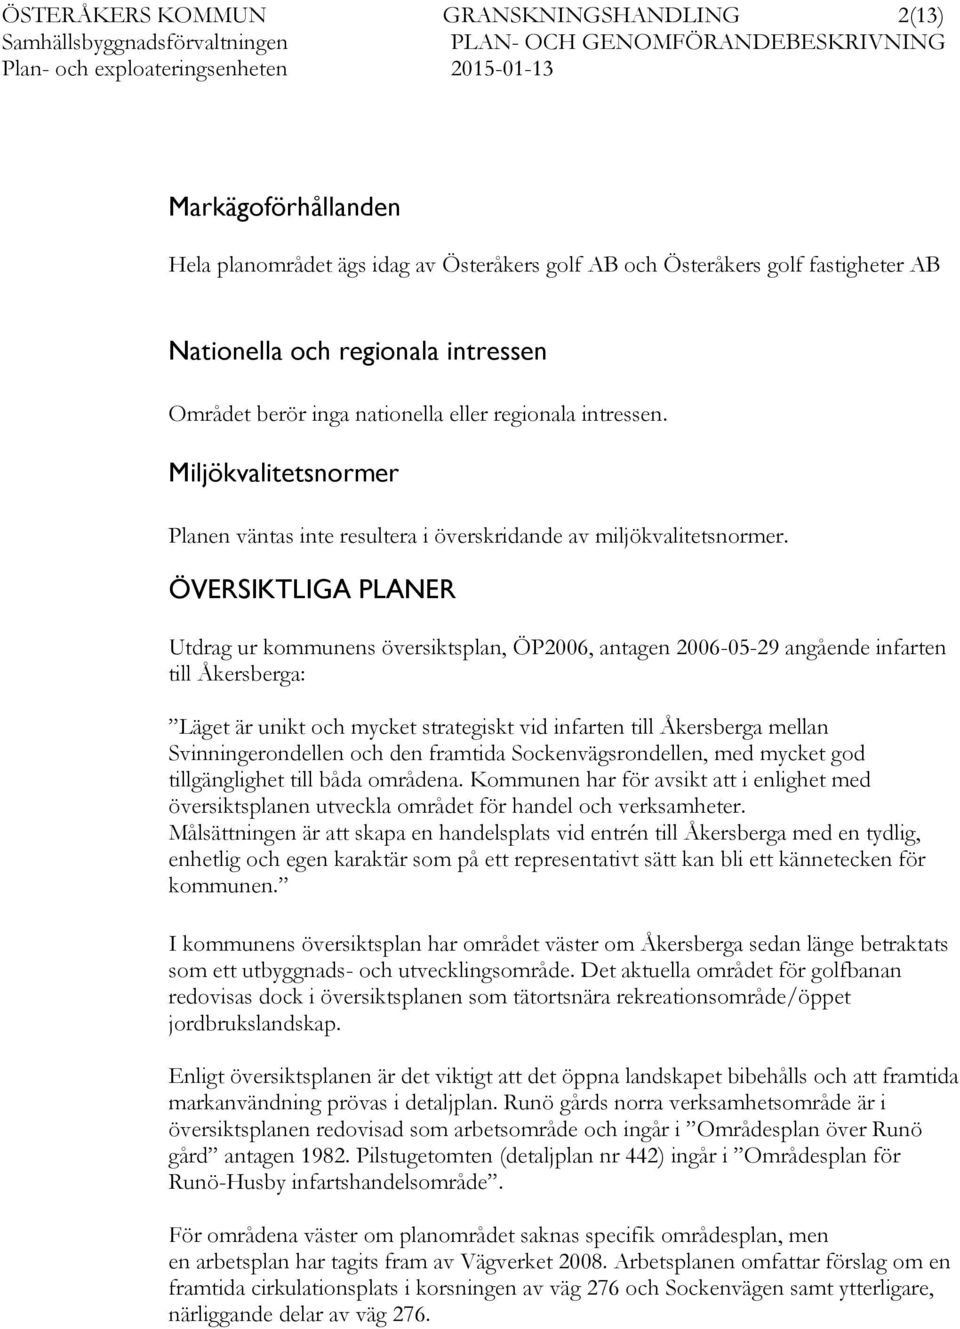 ÖVERSIKTLIGA PLANER Utdrag ur kommunens översiktsplan, ÖP2006, antagen 2006-05-29 angående infarten till Åkersberga: Läget är unikt och mycket strategiskt vid infarten till Åkersberga mellan